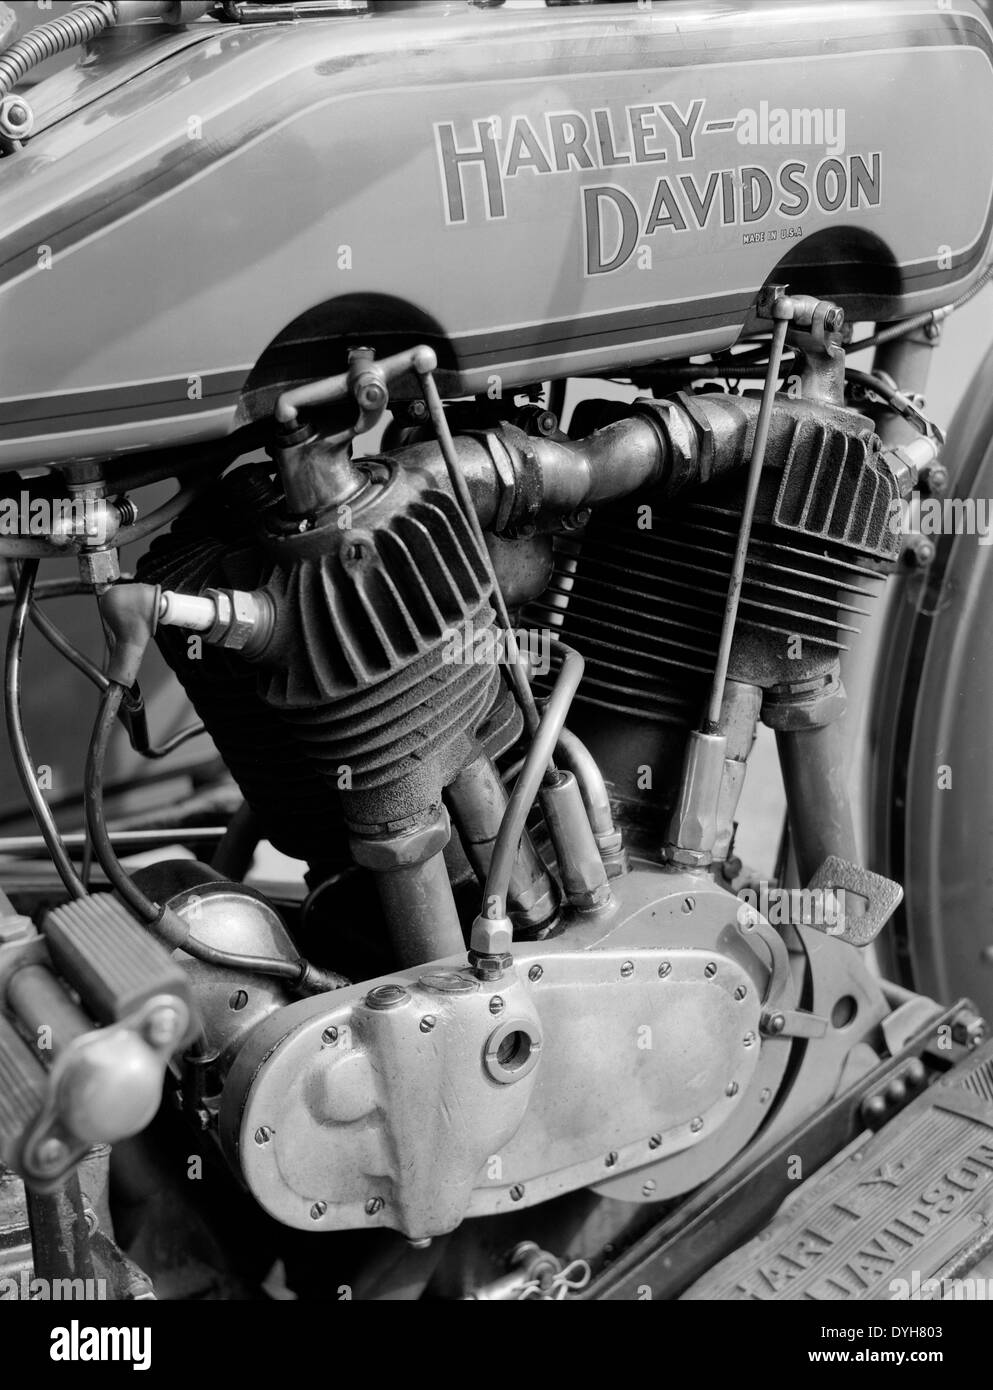 F-Head Harley-Davidson anciennes détail moteur Banque D'Images